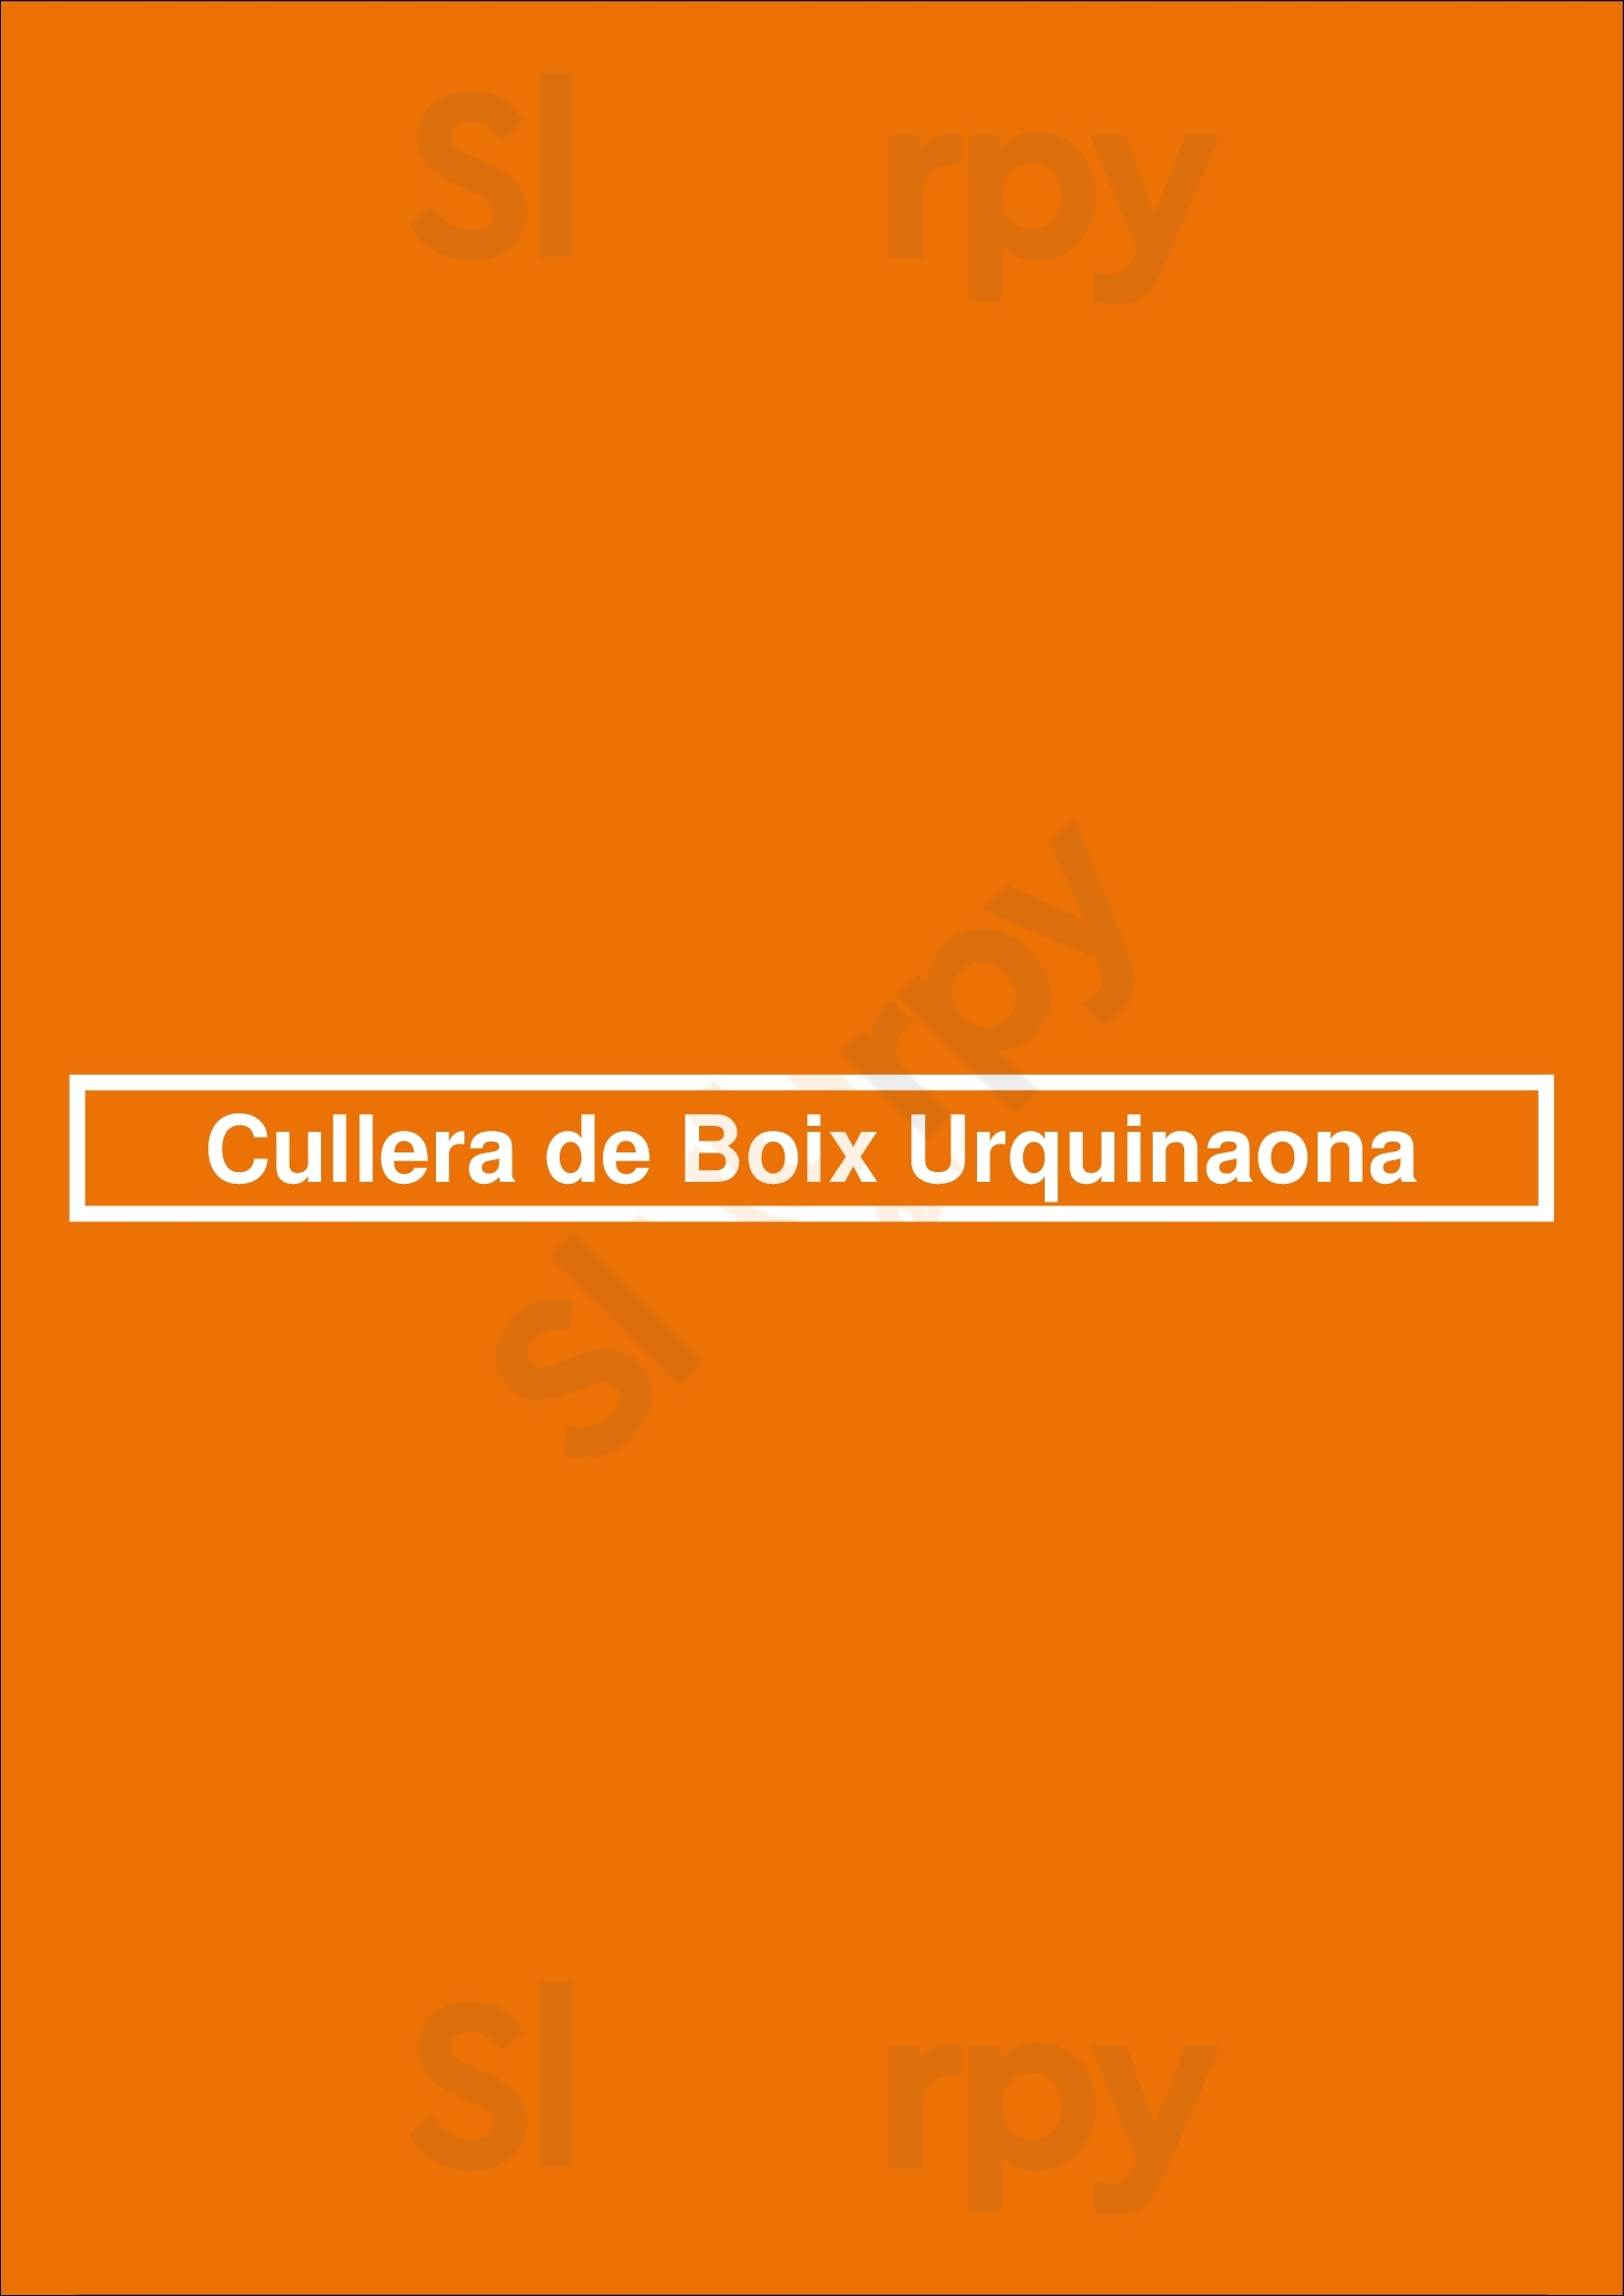 Cullera De Boix Urquinaona Barcelona Menu - 1